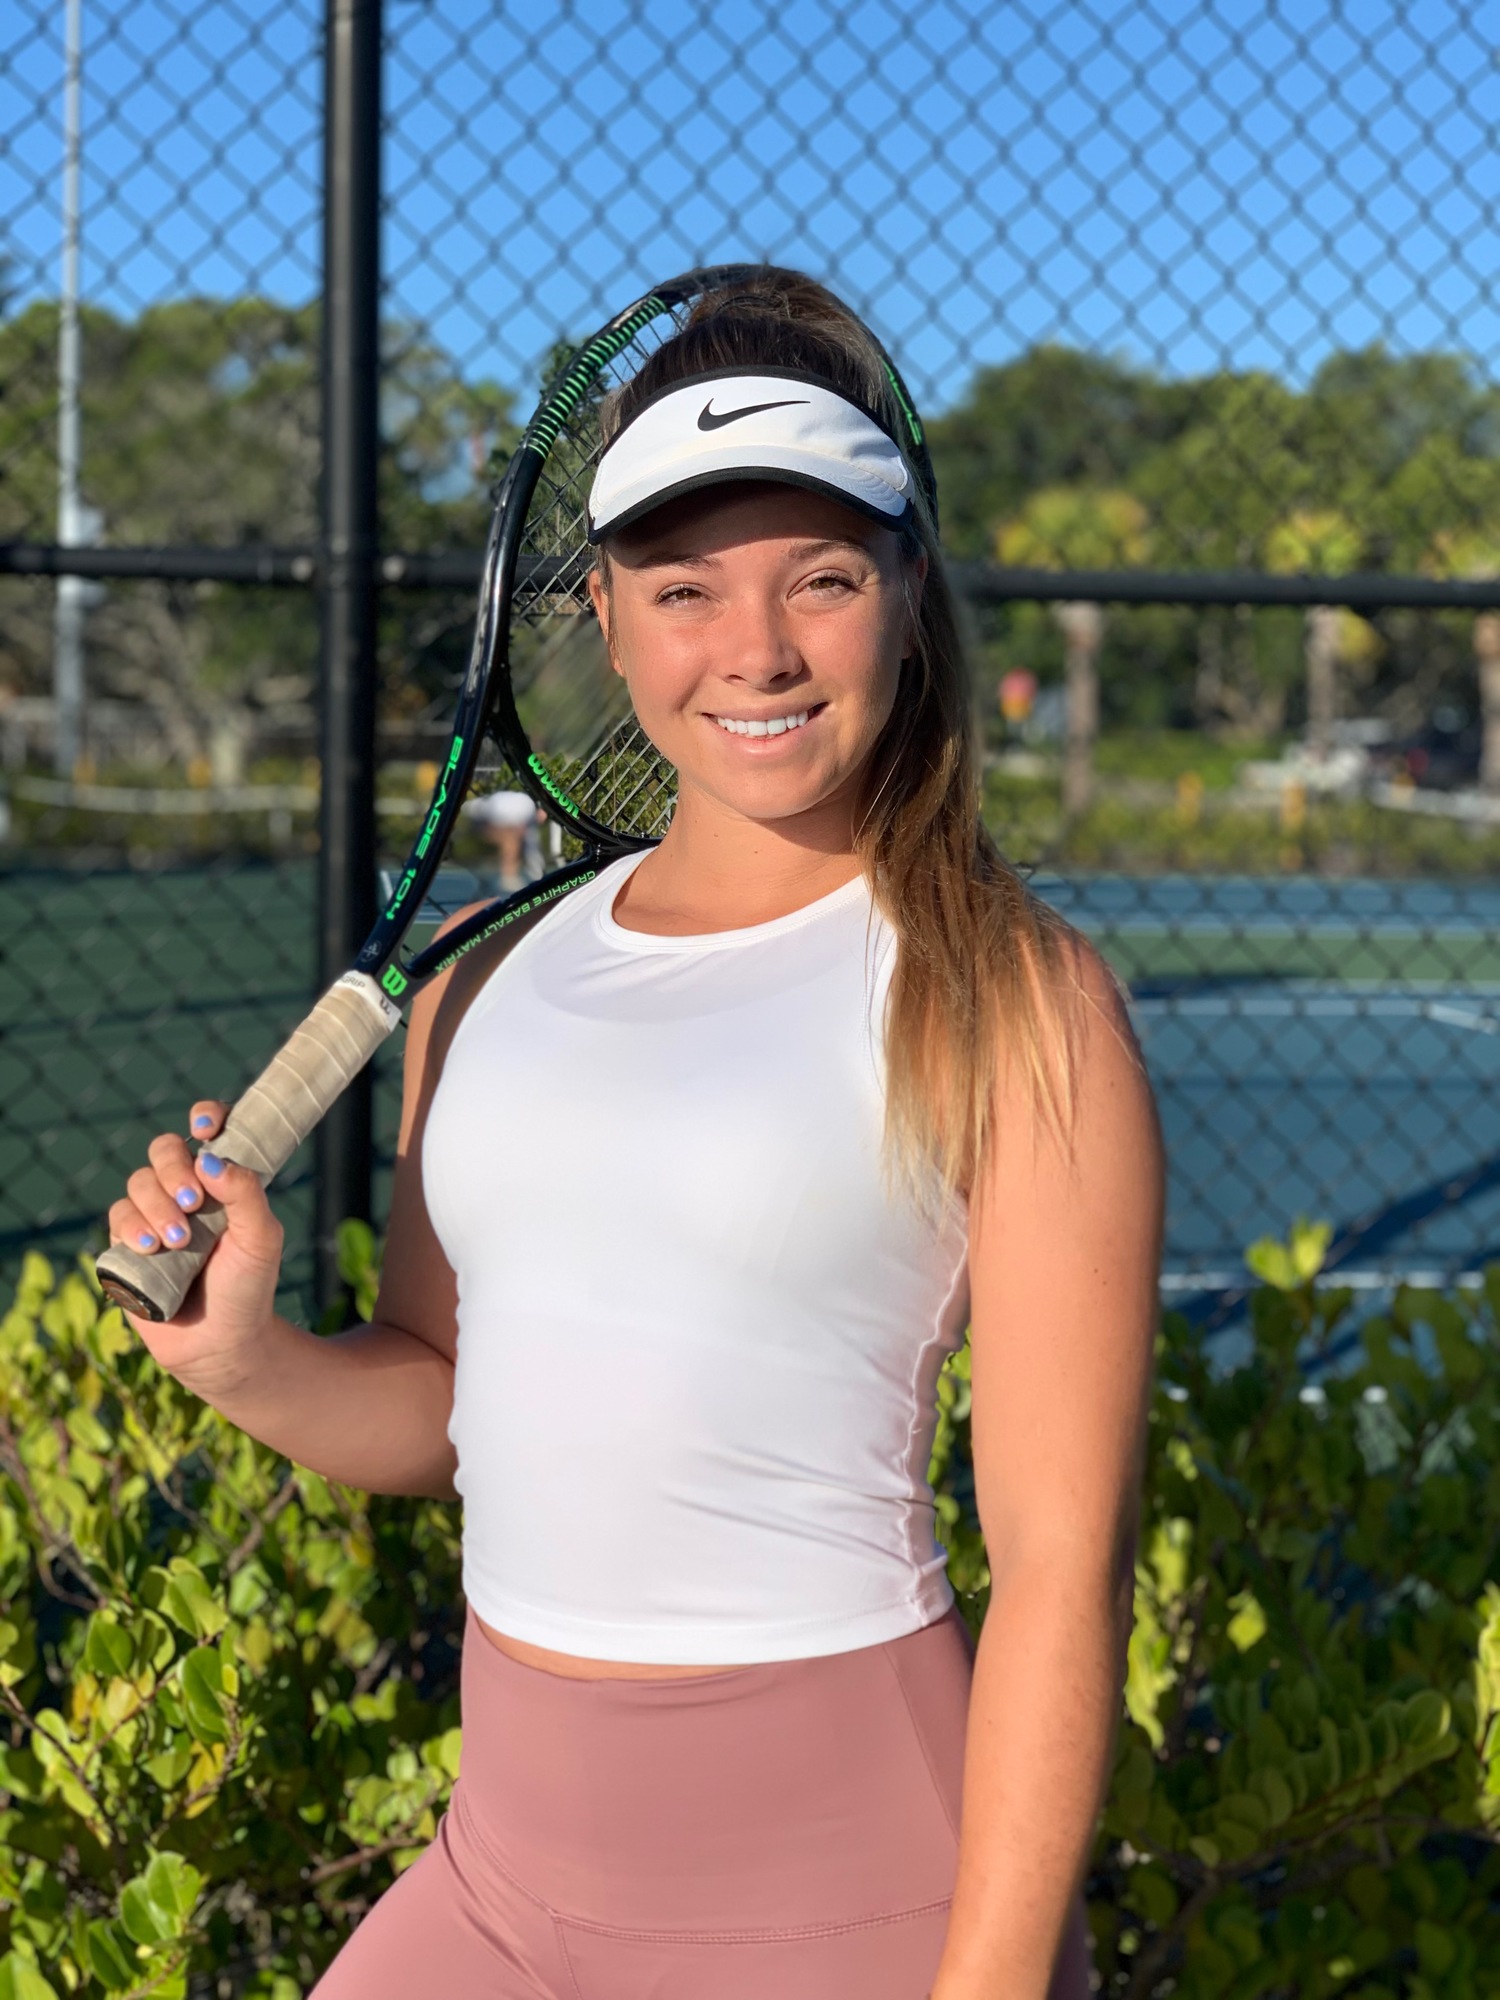 Savannah G. teaches tennis lessons in Bradenton, FL